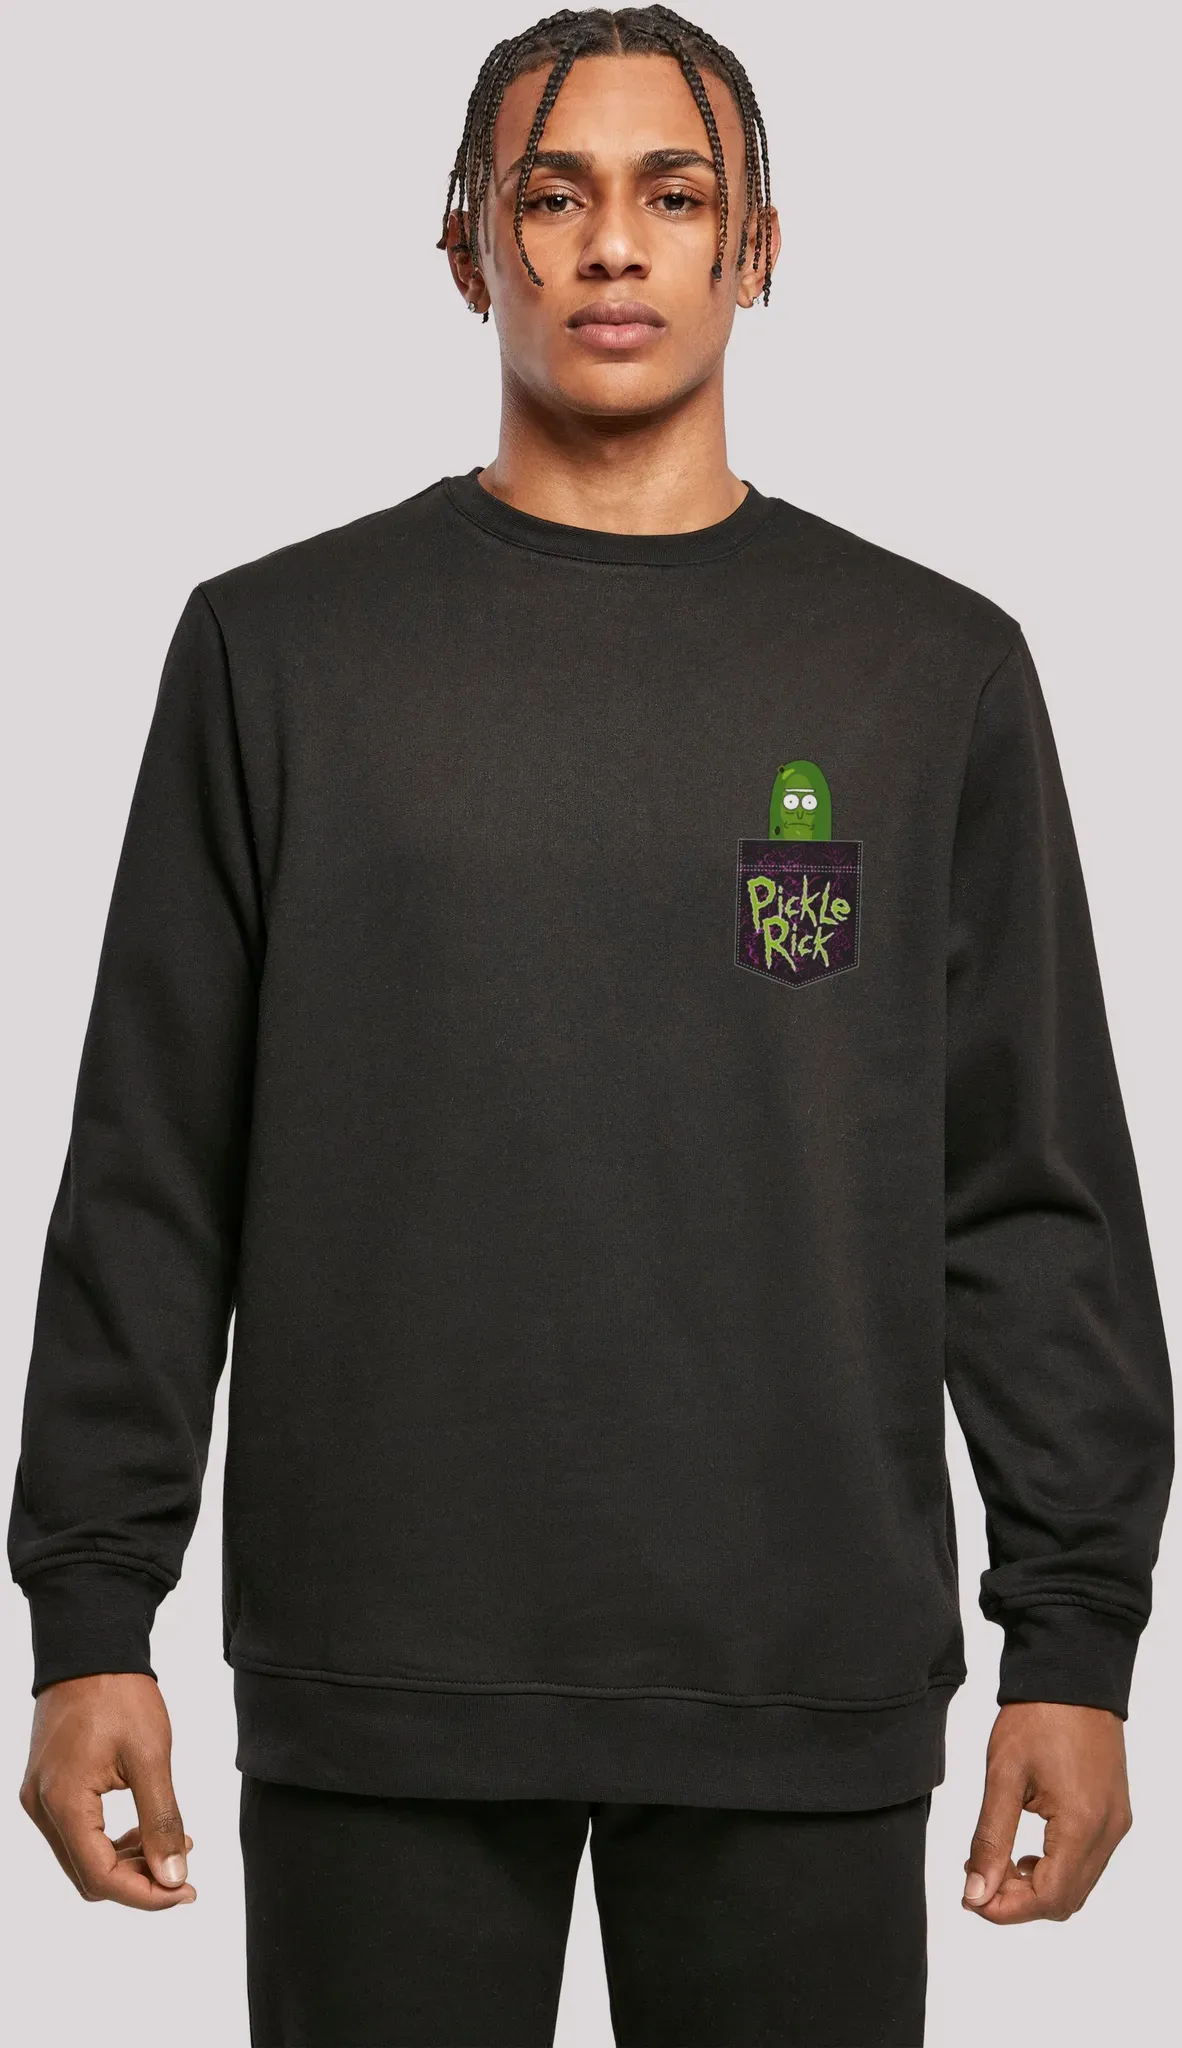 Sweatshirt F4NT4STIC "Rick und Morty Pickle Rick" Gr. 5XL, schwarz Herren Sweatshirts Print